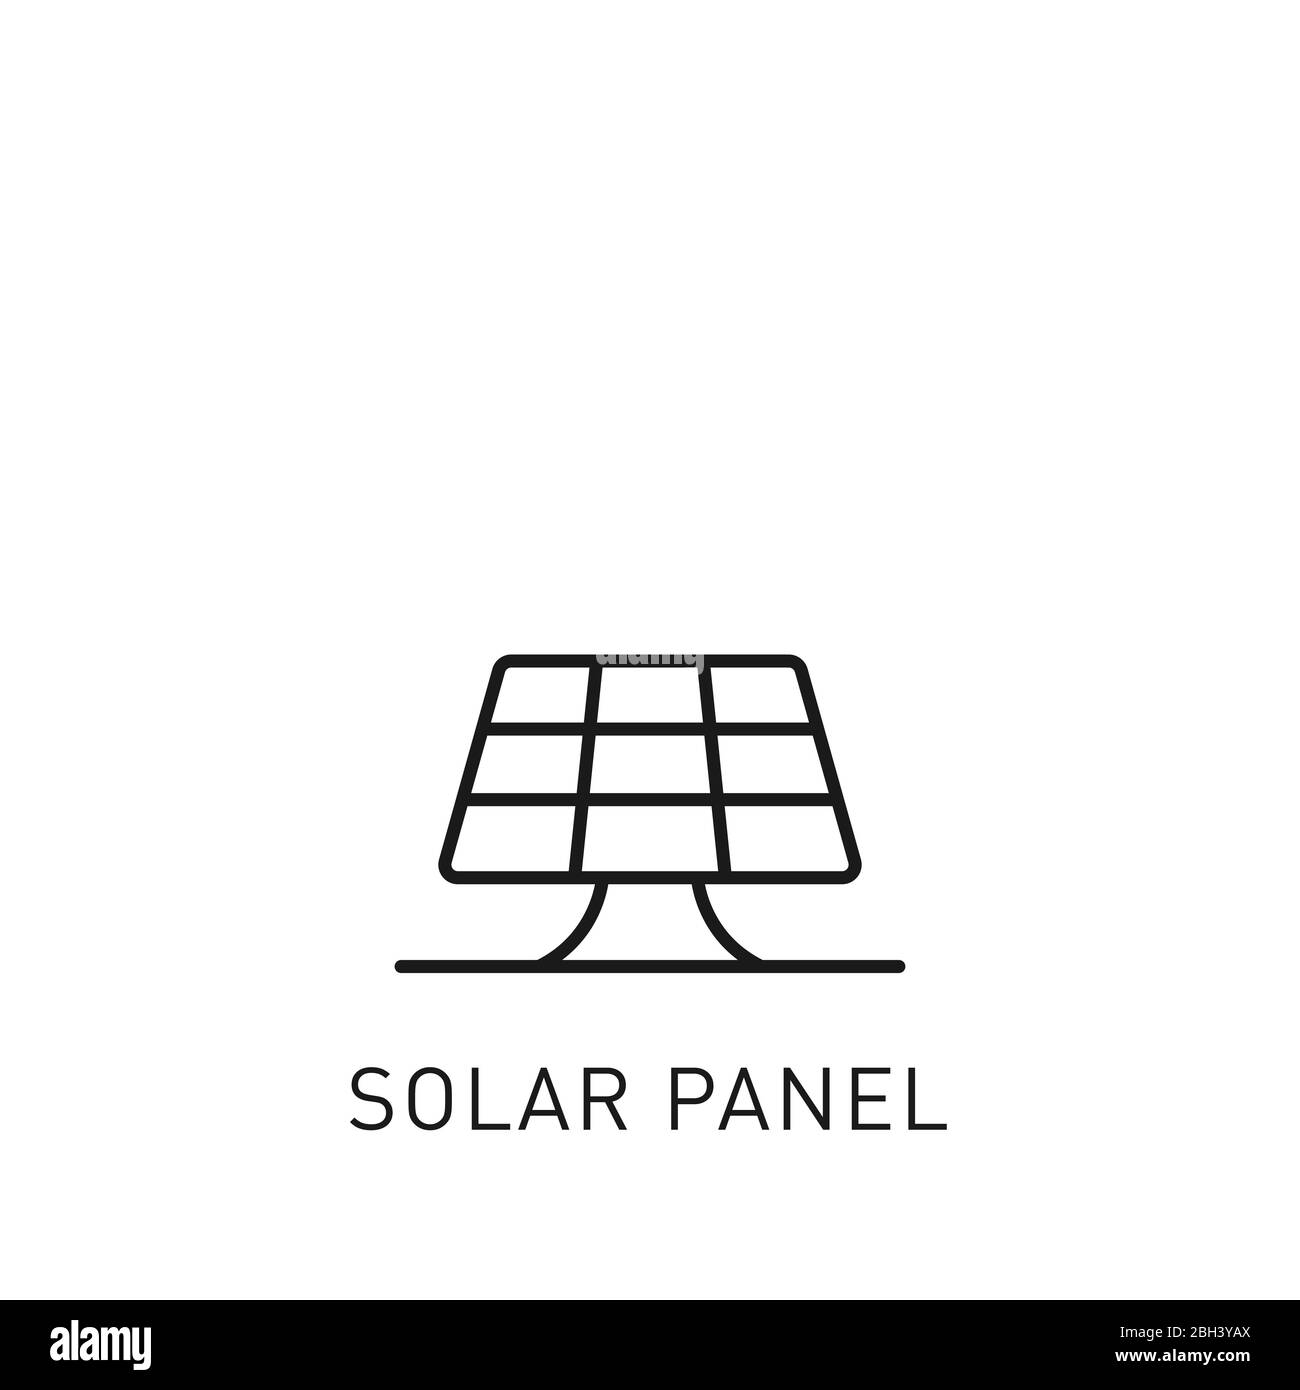 Sonnenkollektoren, dünne Linie, Symbol. Gestaltungselement für erneuerbare Energien, grüne Technologie. Vektorgrafik. Stock Vektor